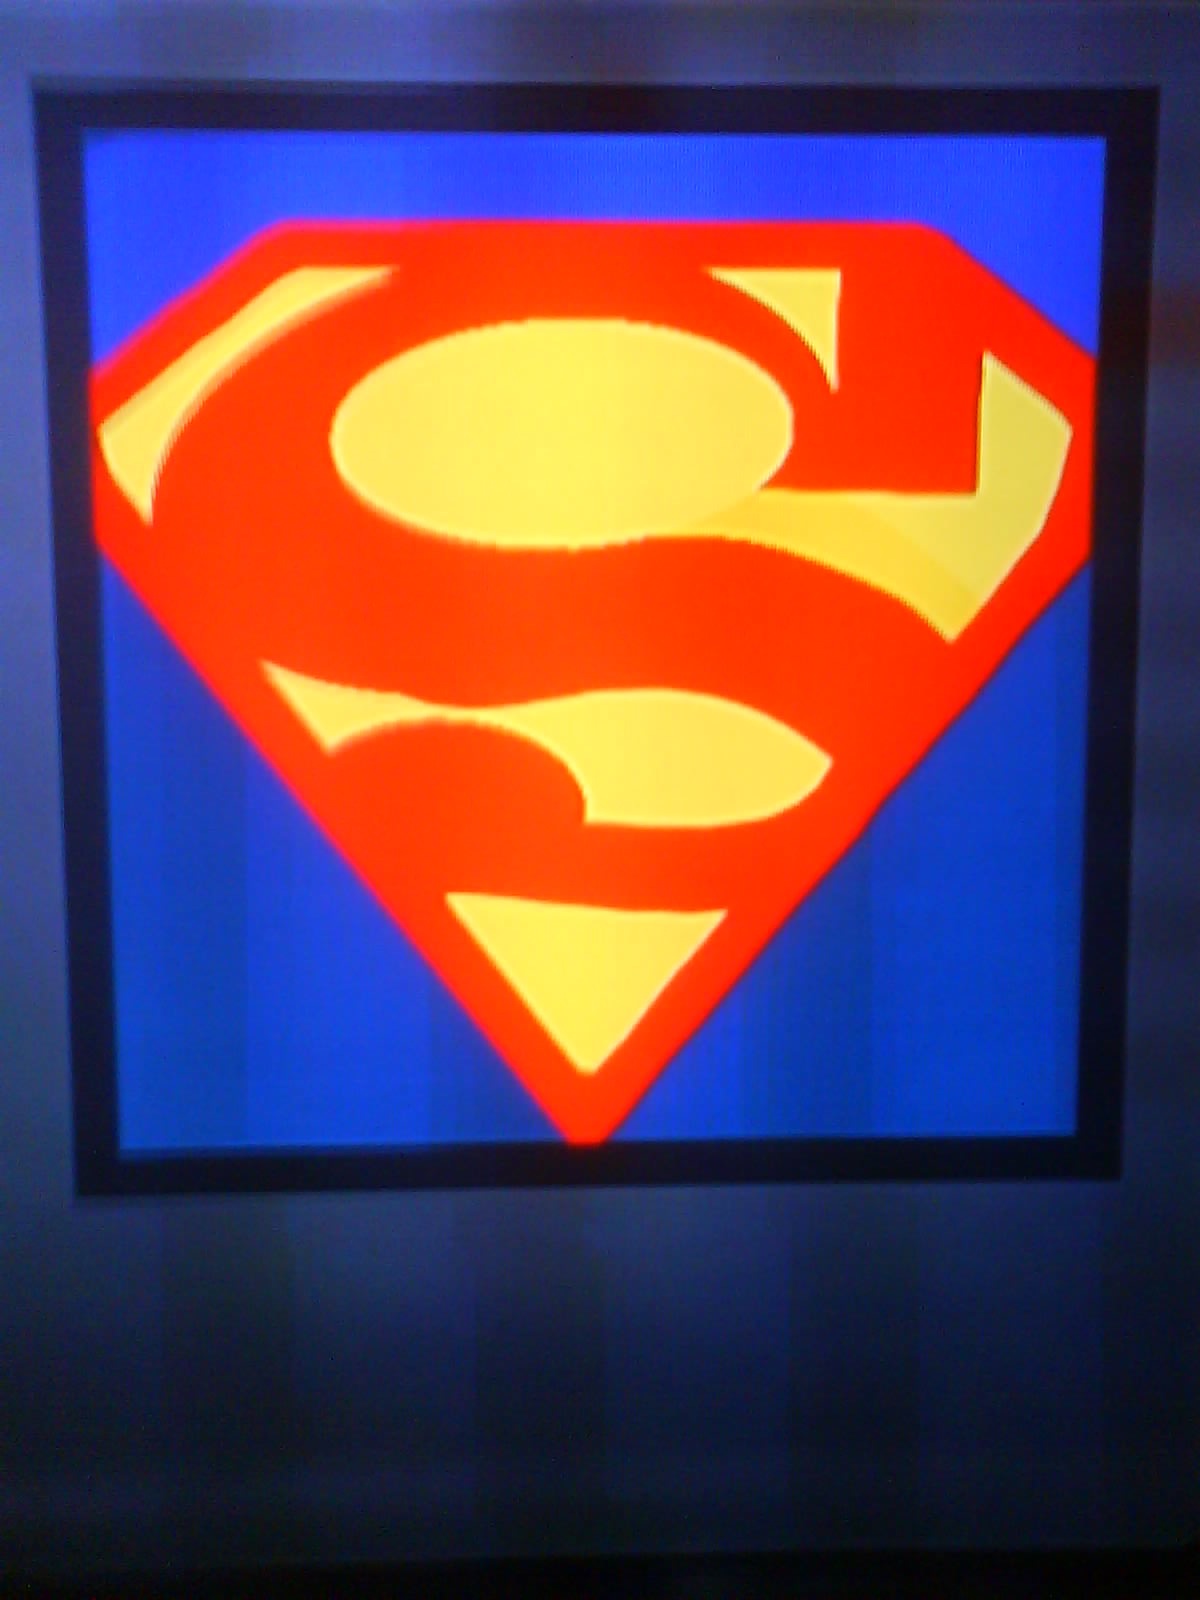 how to make a superman emblem on black ops